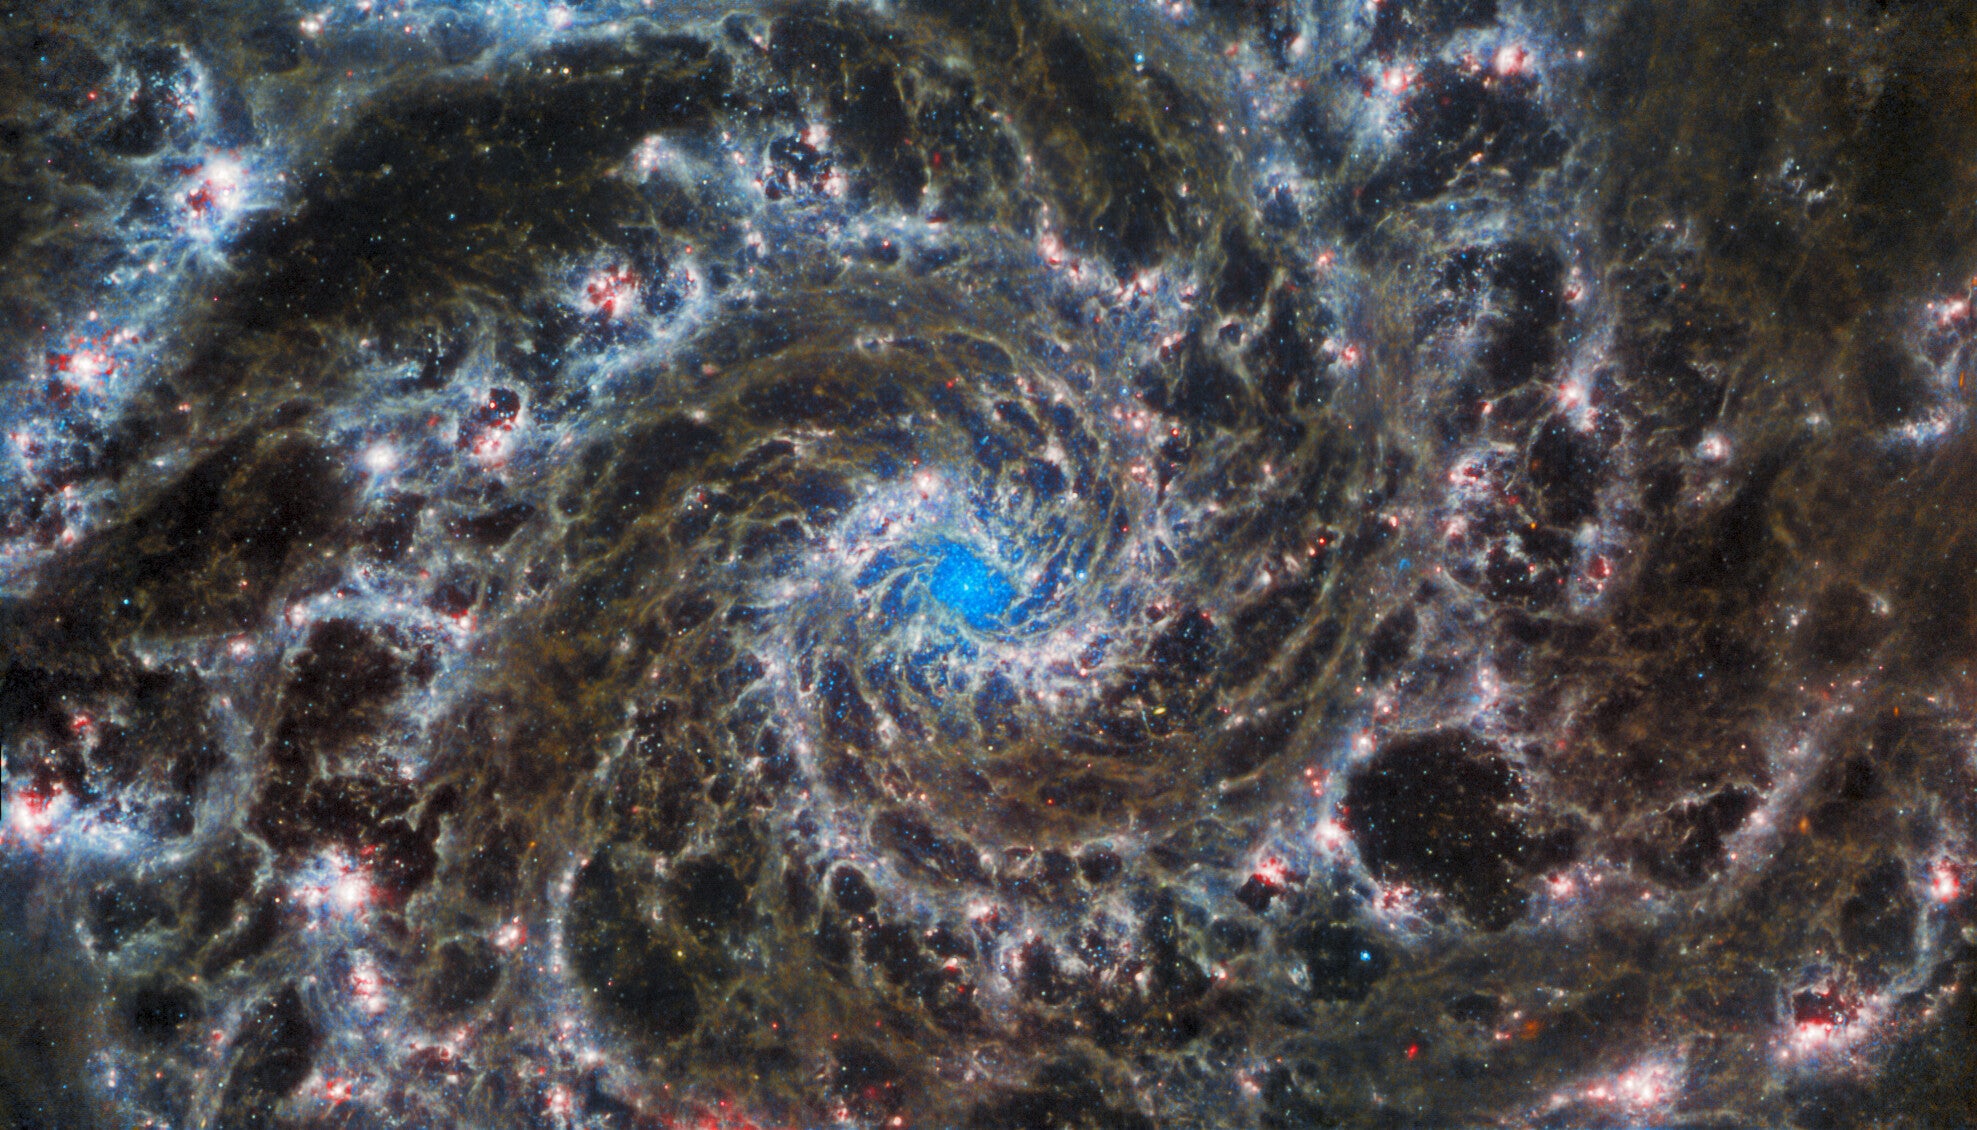 Webb Telescope Inspects the Heart of the Phantom Galaxy